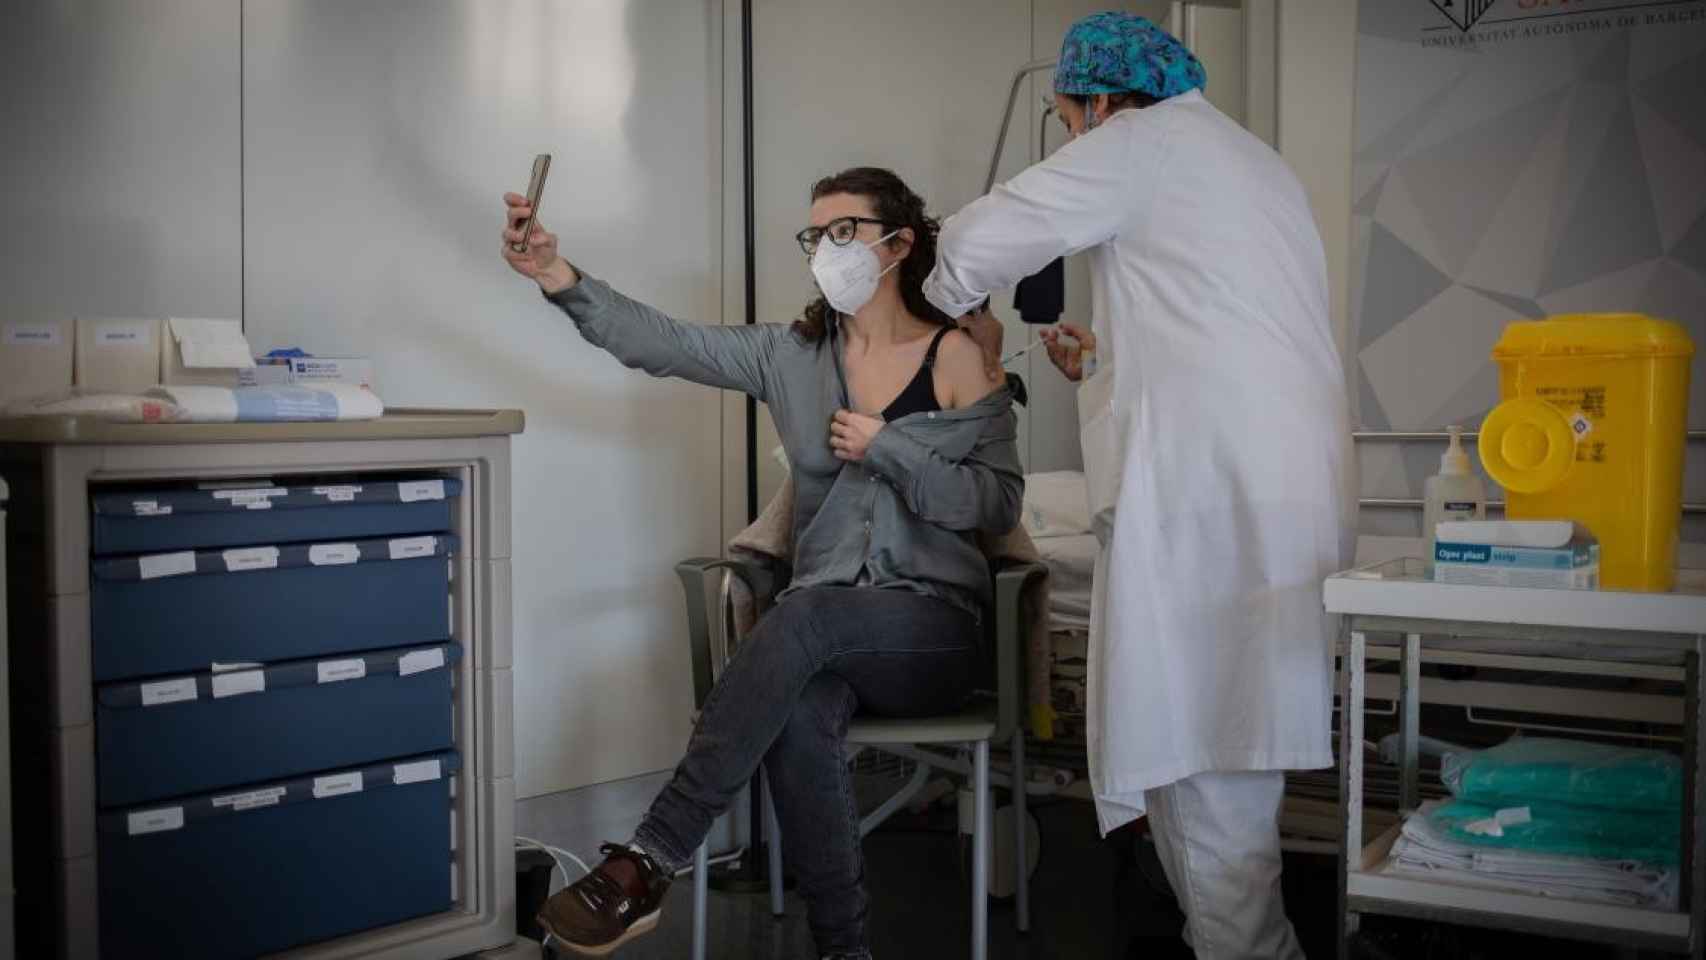 Una joven recibe la primera vacuna contra el Covid-19 en un hospital de Cataluña / DAVID ZORRAKINO - EUROPA PRESS